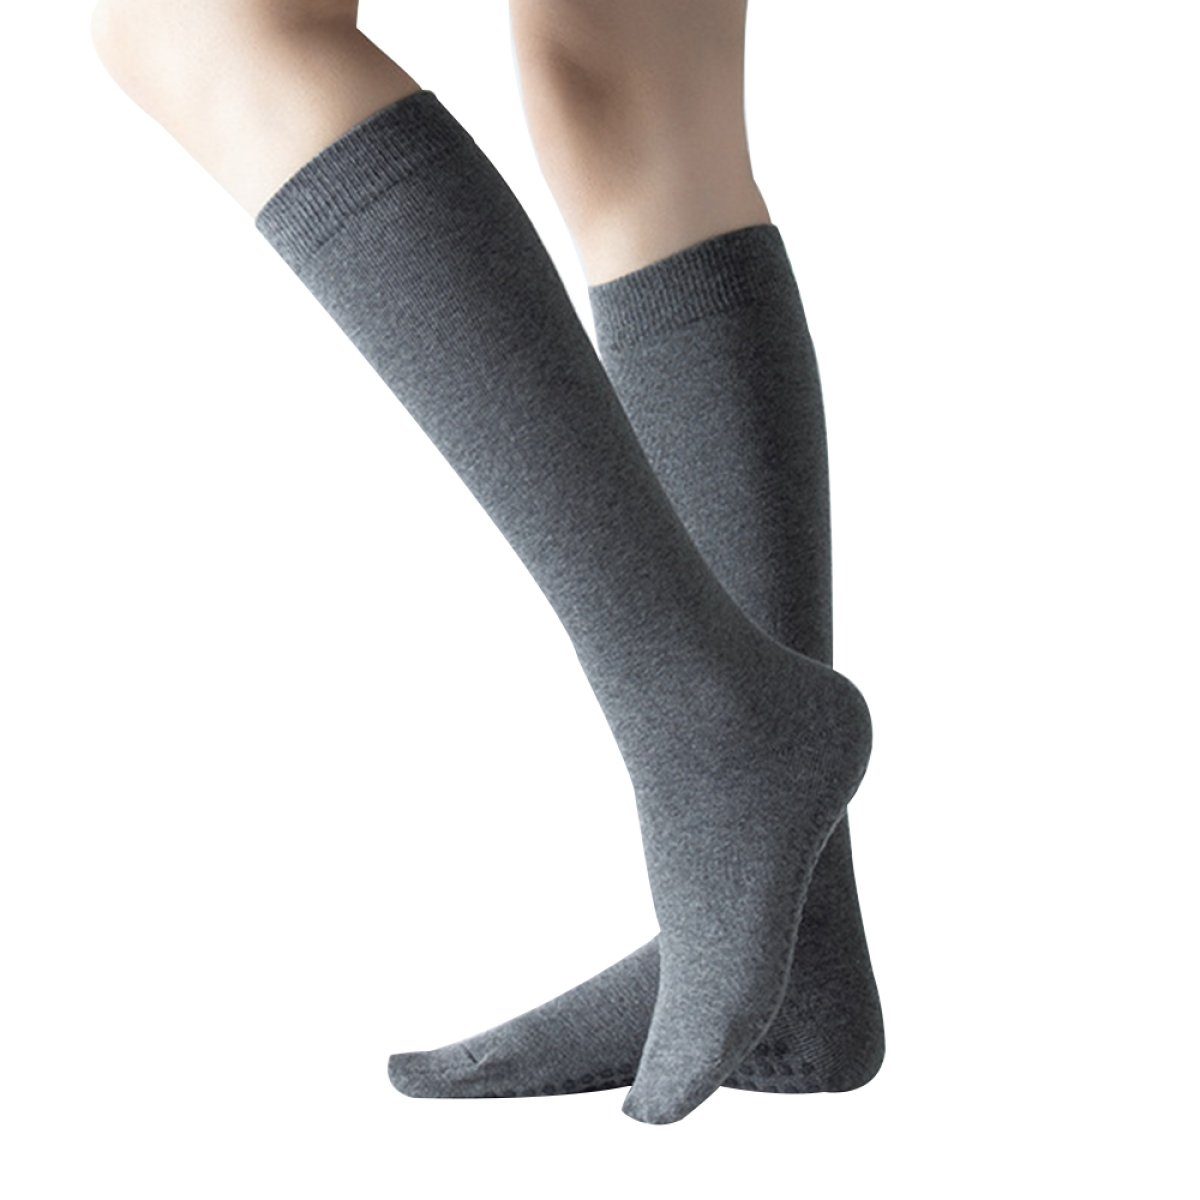 Einemgeld Kniestrümpfe Damen Klassische Einfarbige Socken/Kniestrümpfe Ladies/College Socken Grau